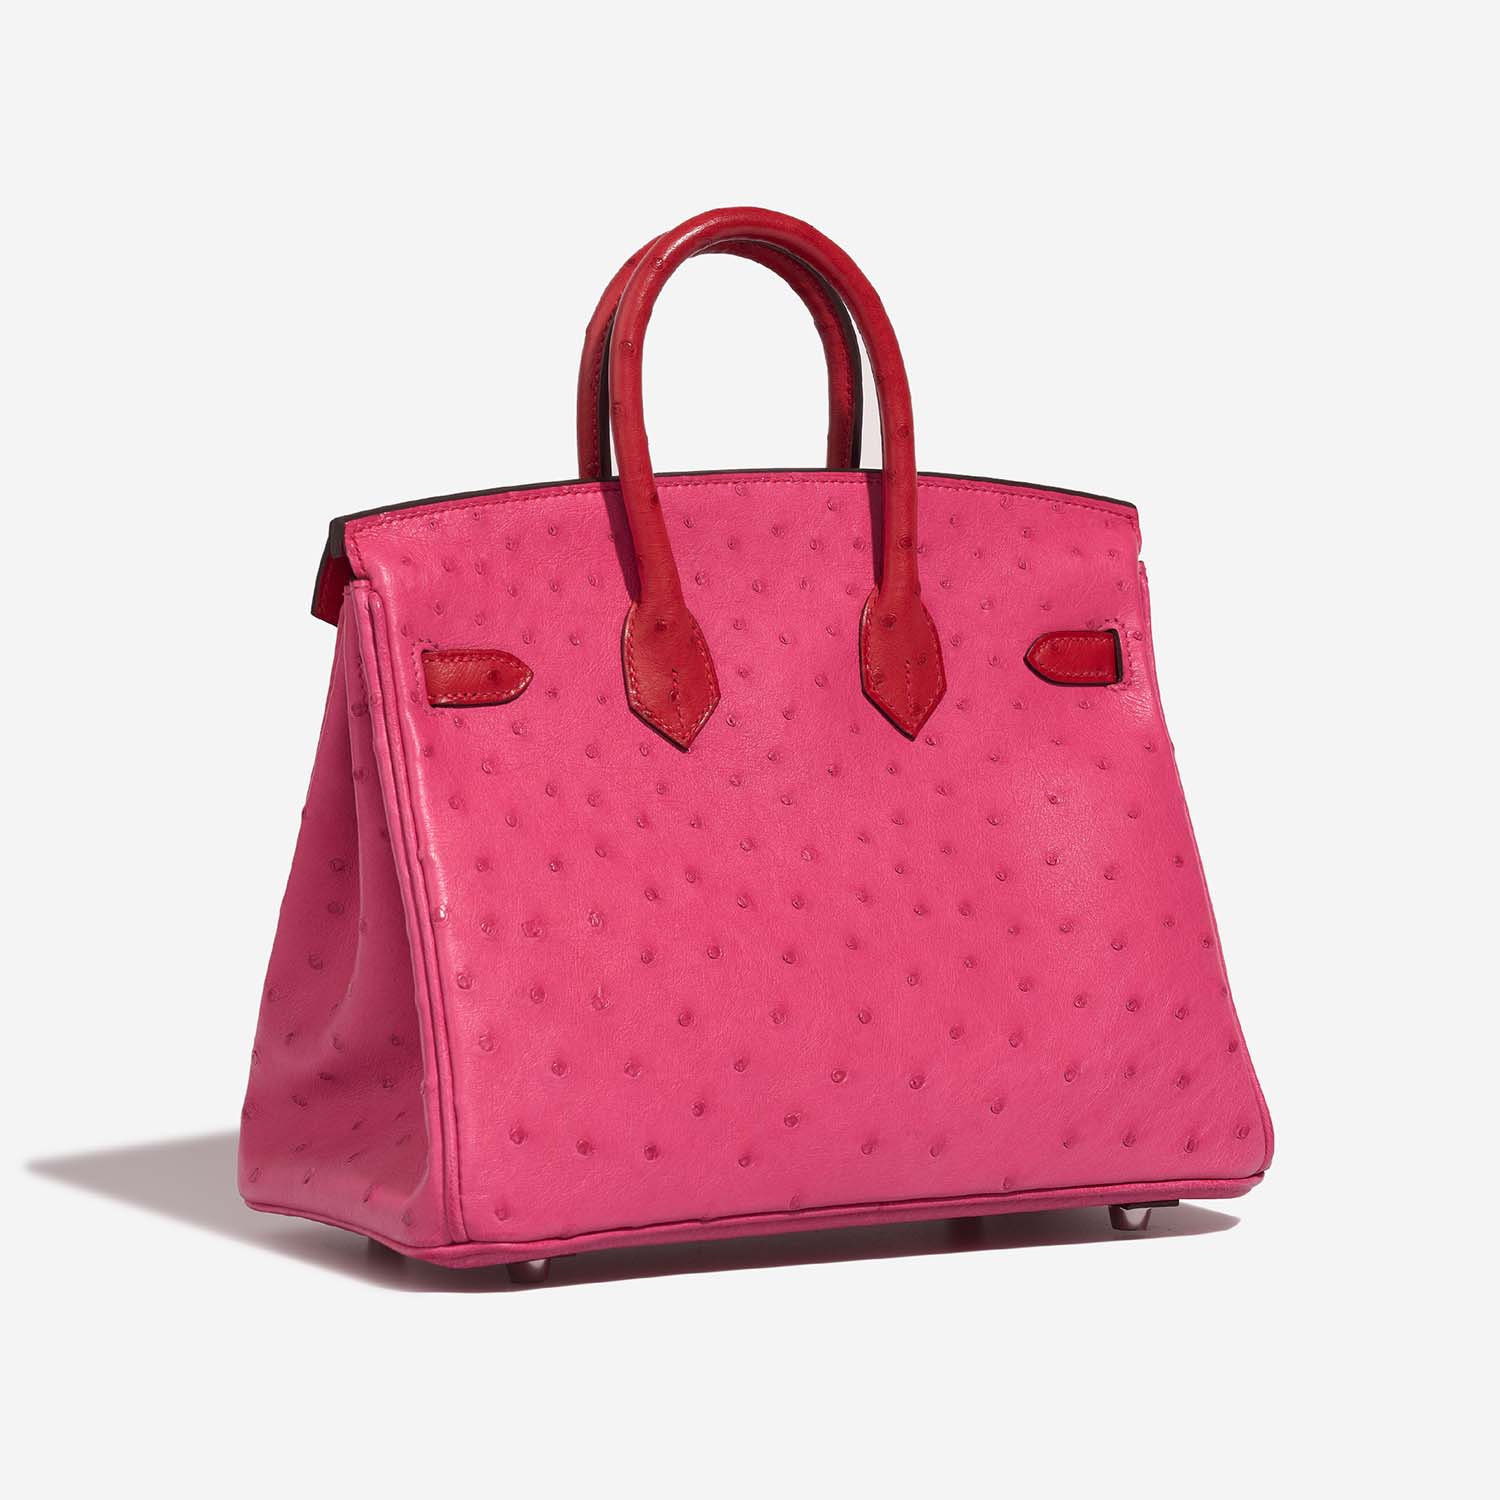 Hermès Birkin 25 RoseTyrien-RougeVif Side Back | Verkaufen Sie Ihre Designer-Tasche auf Saclab.com